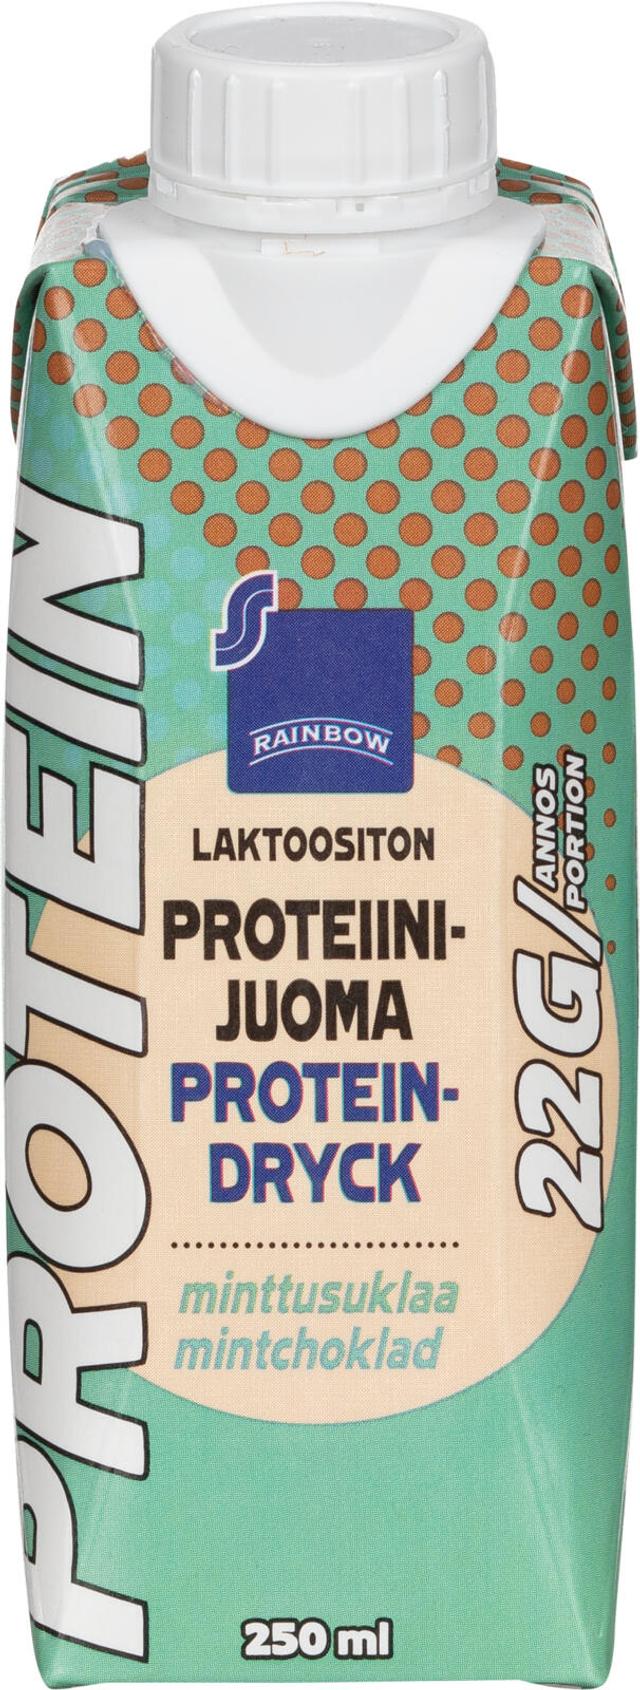 Rainbow proteiinijuoma minttusuklaa laktoositon 250 ml